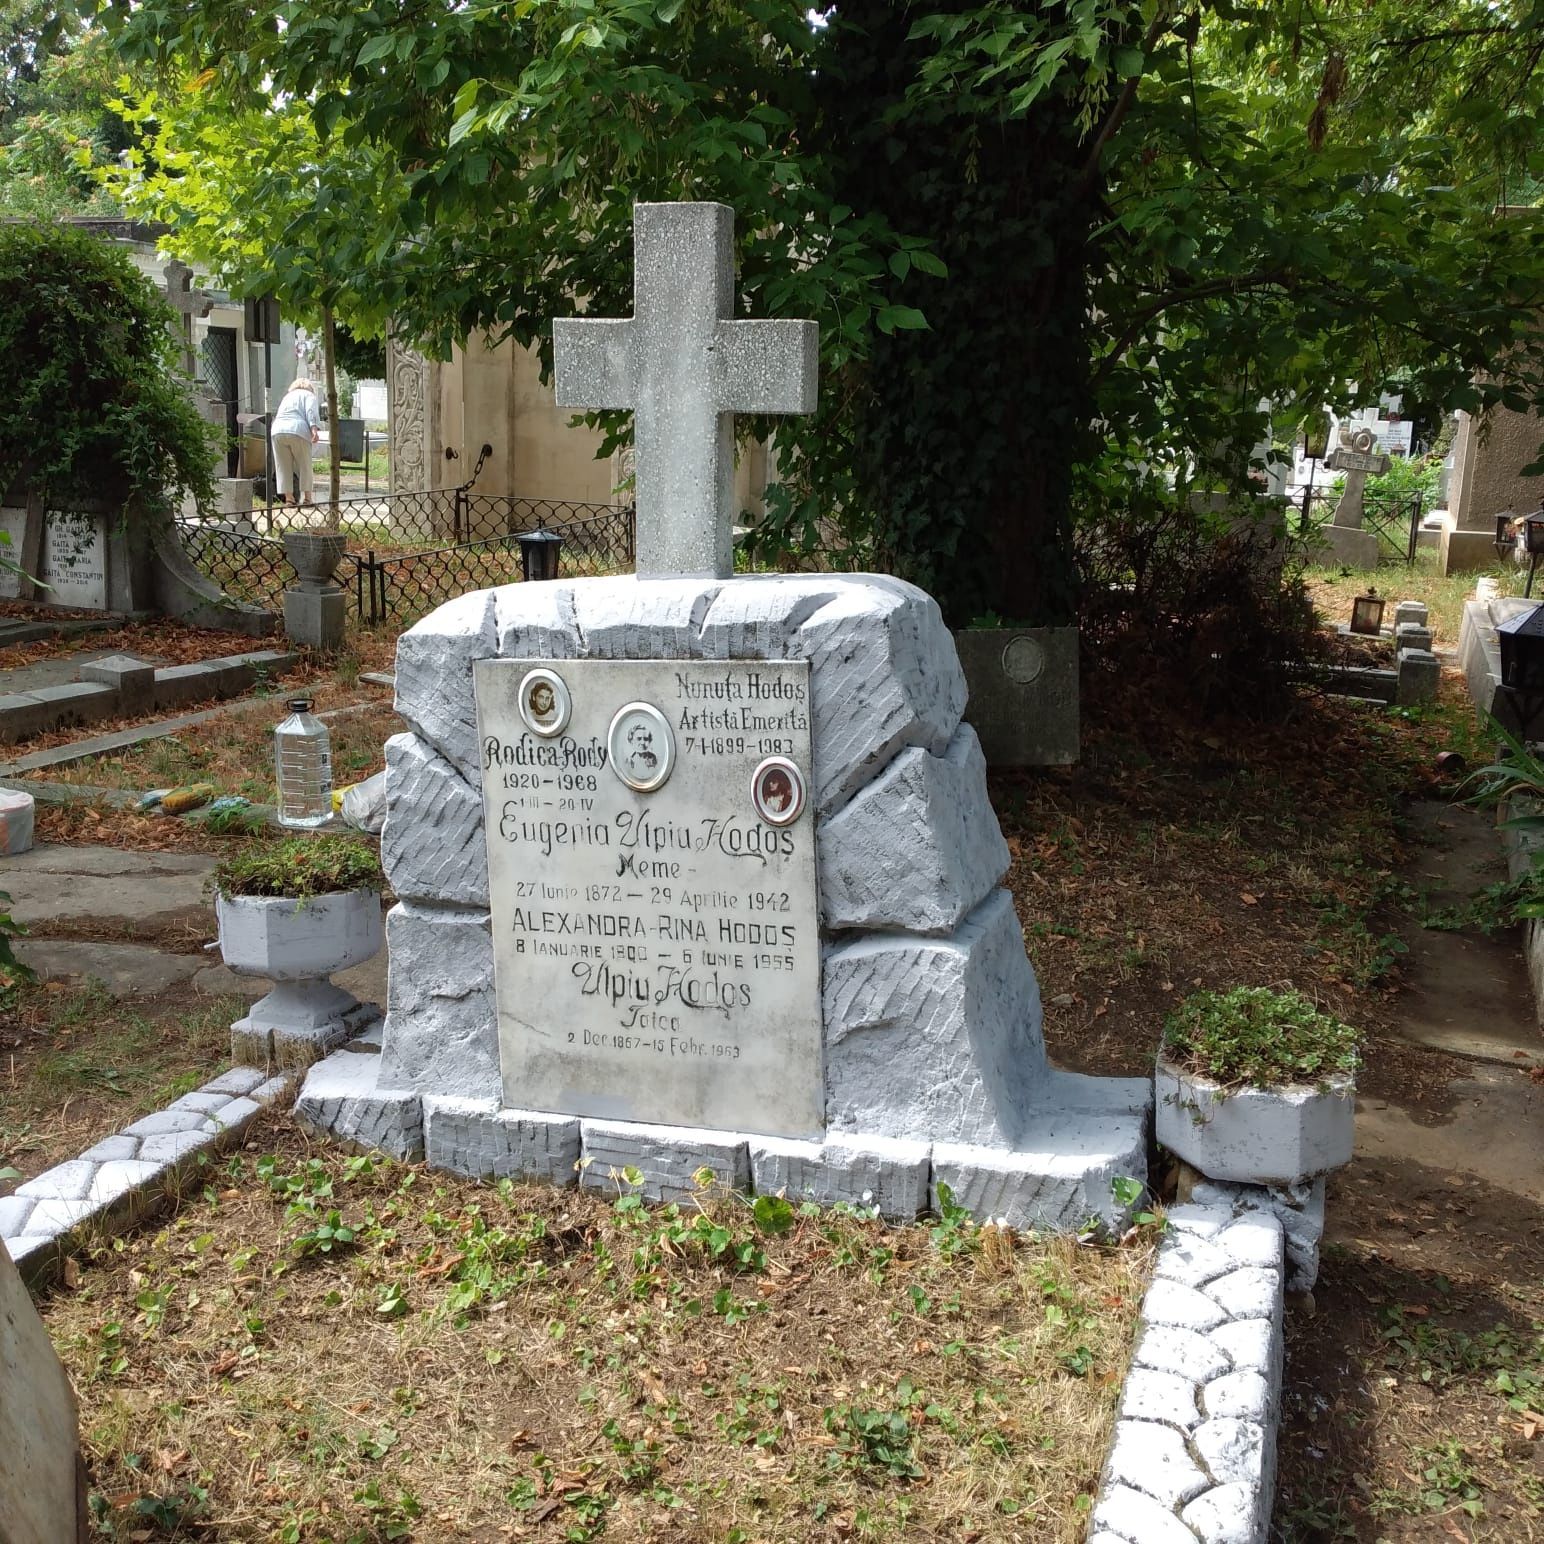 Vând loc de veci două morminte, 6×6 cimitirul Belu, zonă actori